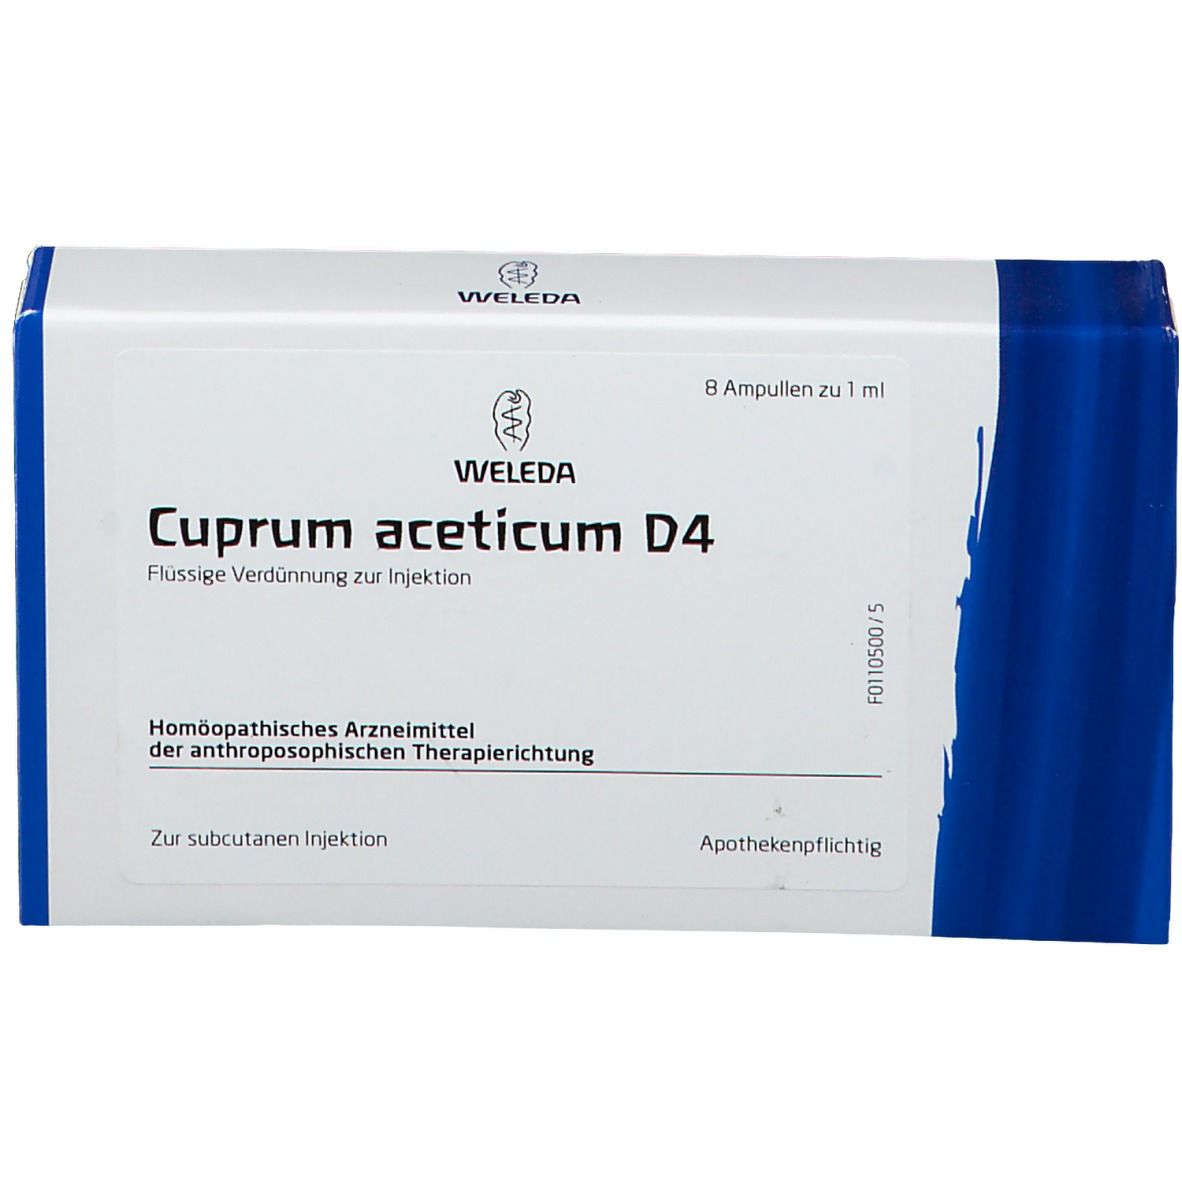 Cuprum Aceticum D4 Ampullen